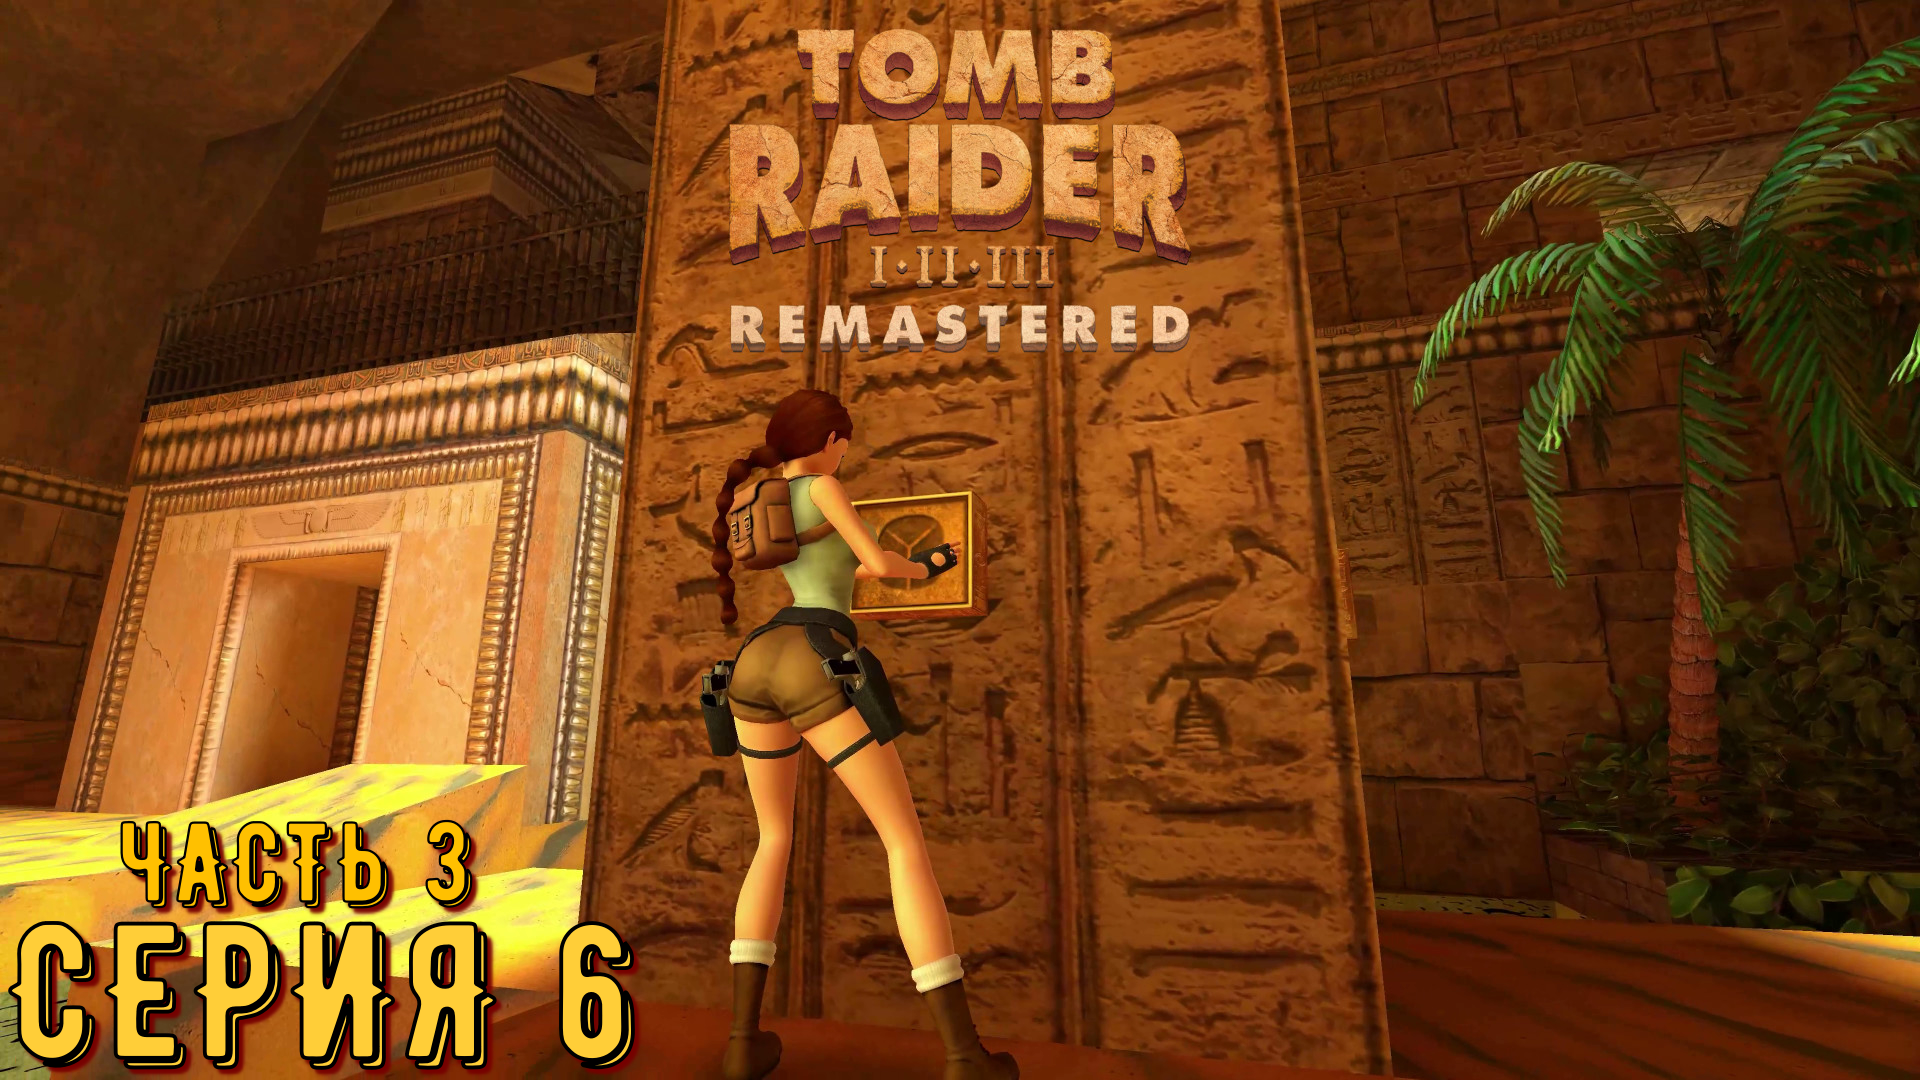 Tomb Raider 1-3 Remastered ► Серия 6 часть 3 ◄ | Полное прохождение  | Запись СТРИМа